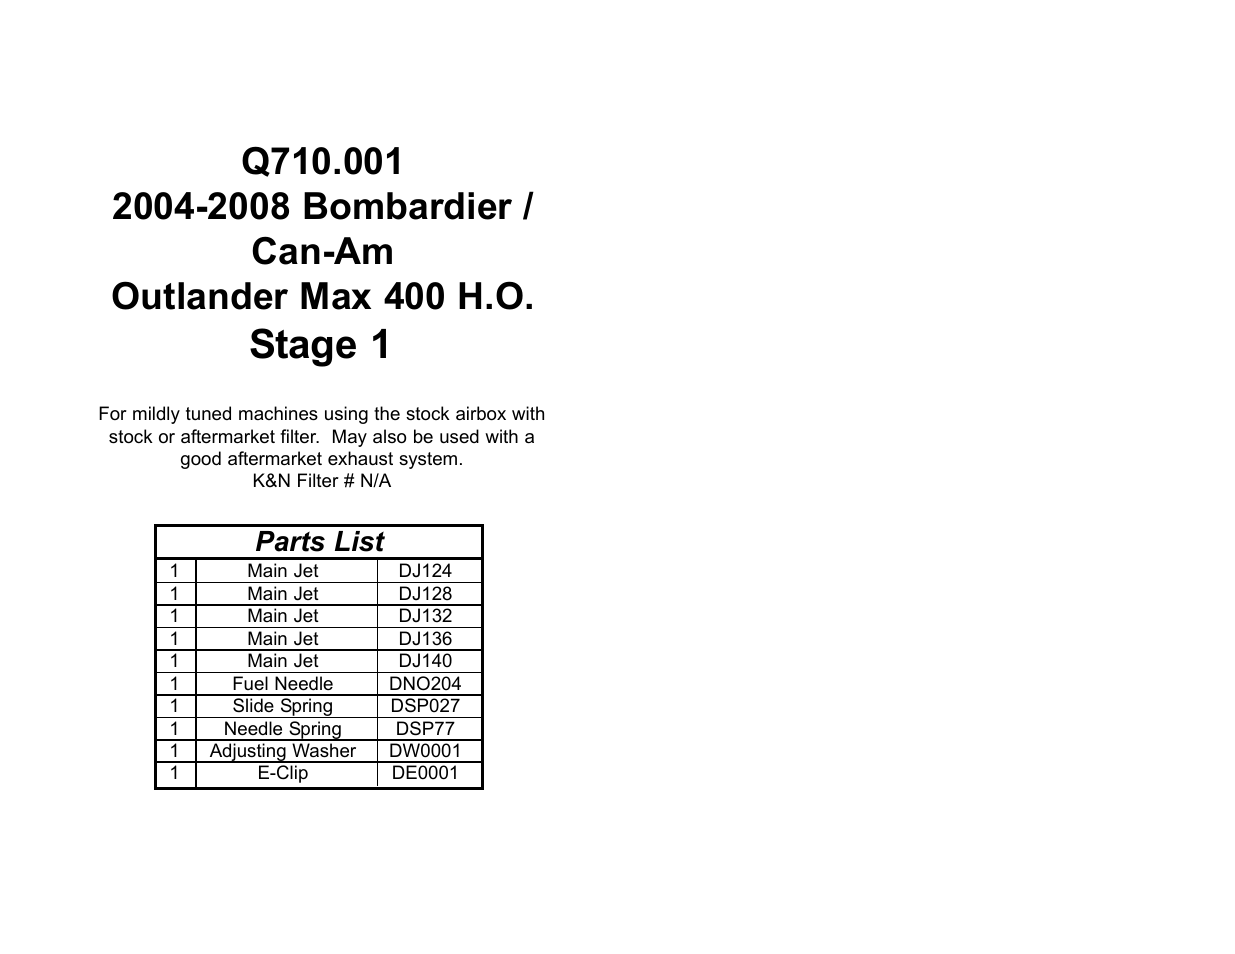 DynoJet Jet Kit for Can-Am Outlander MAX 400 HO (04-08)